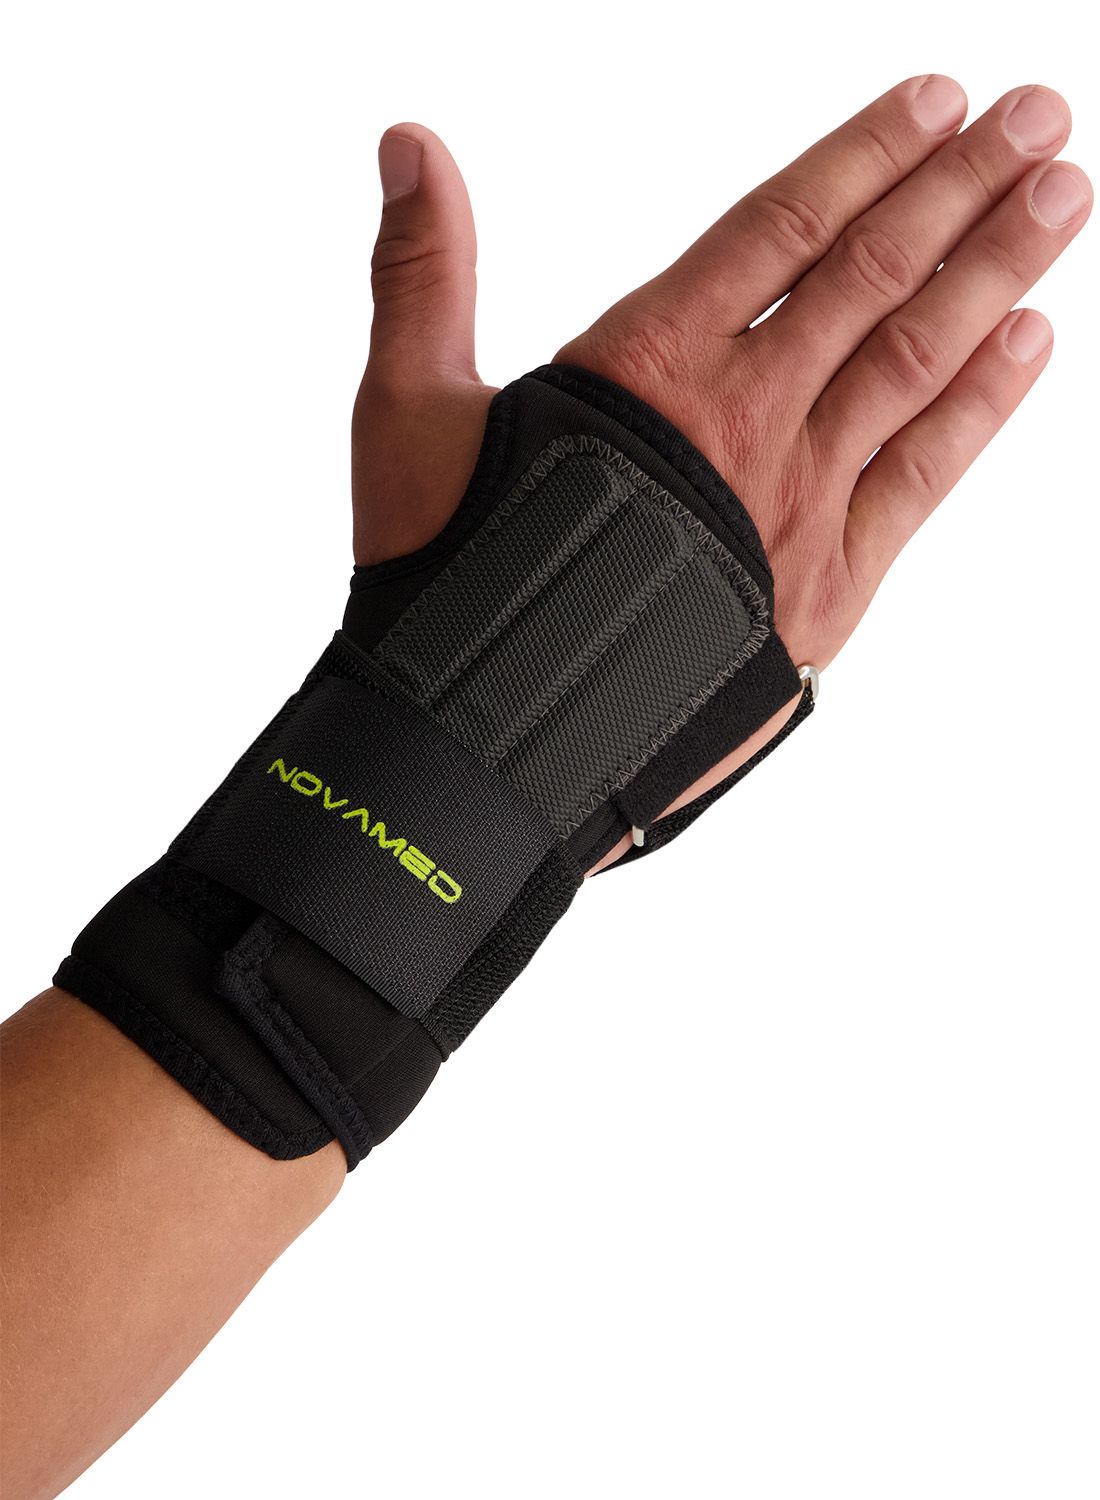 novamed lightweight wrist support for sale